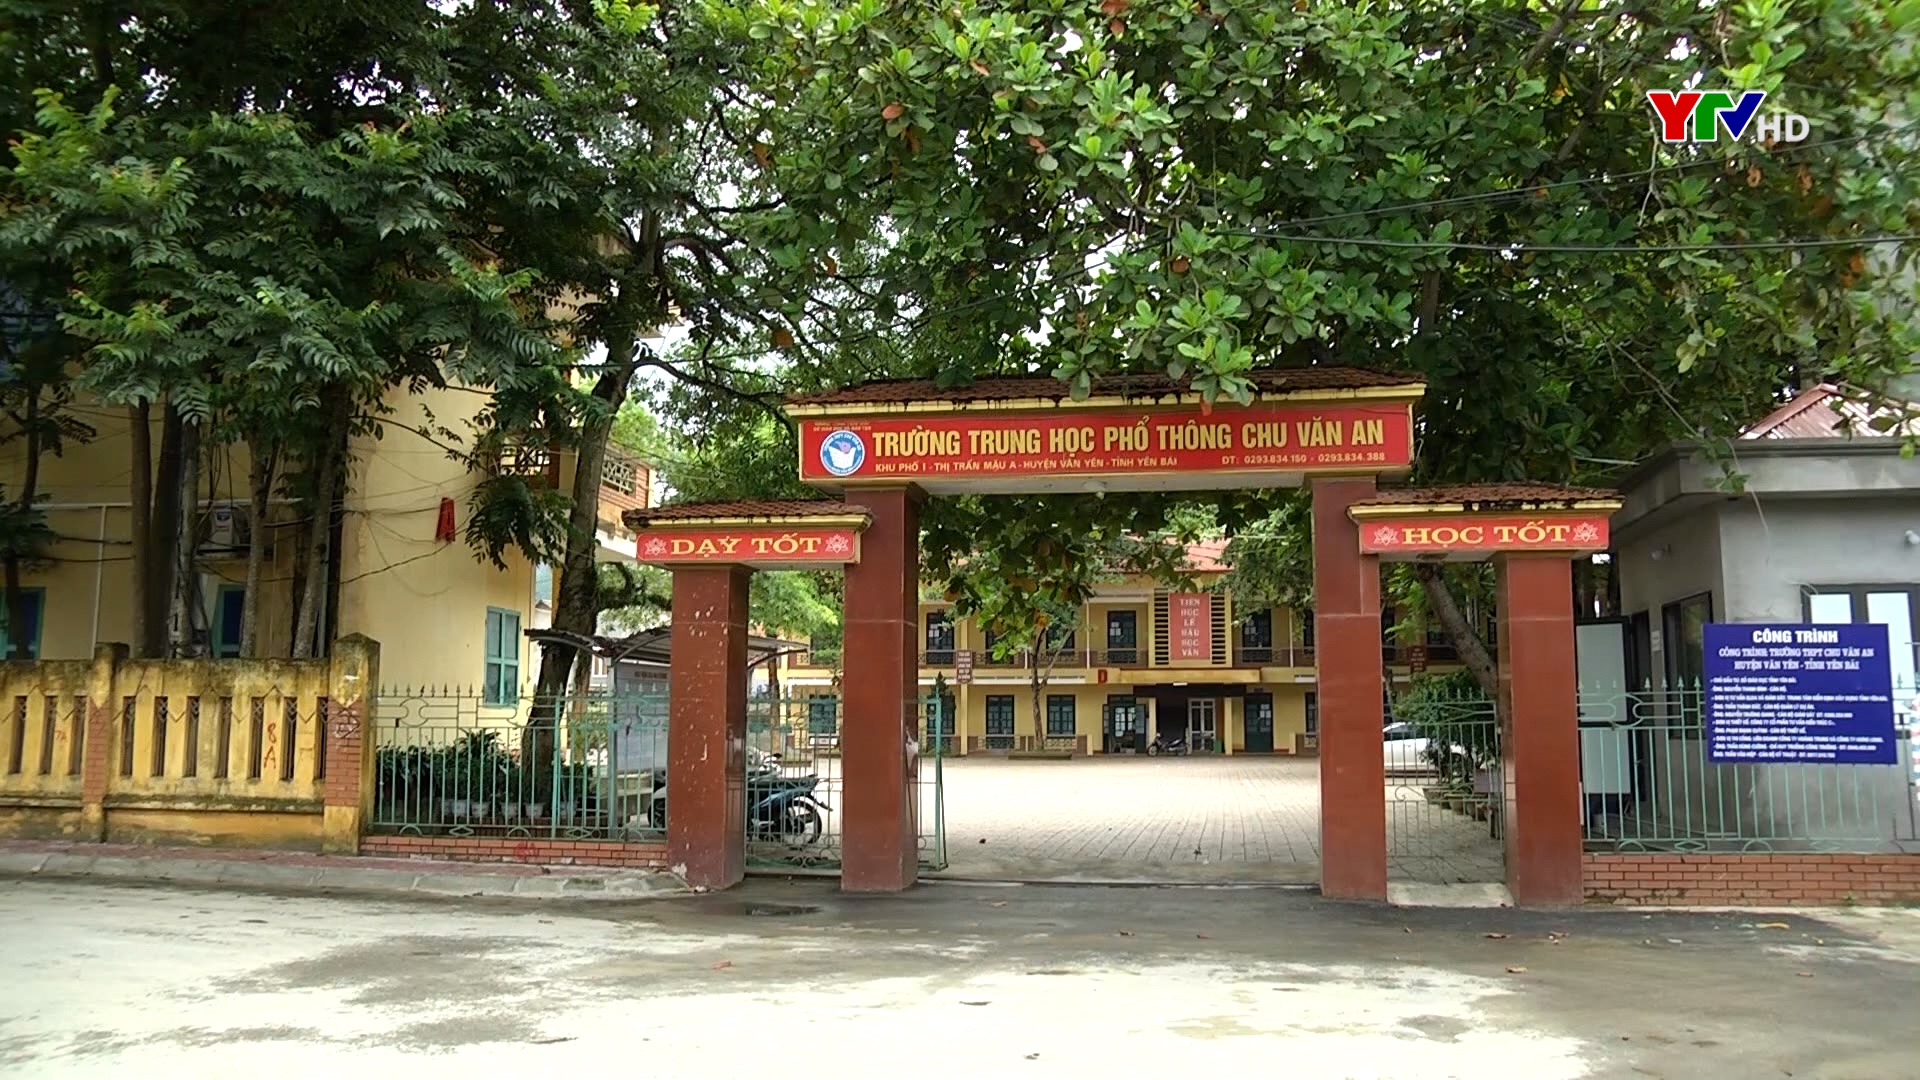 Trường THPT Chu Văn An, huyện Văn Yên - Điểm sáng của ngành Giáo dục Yên Bái